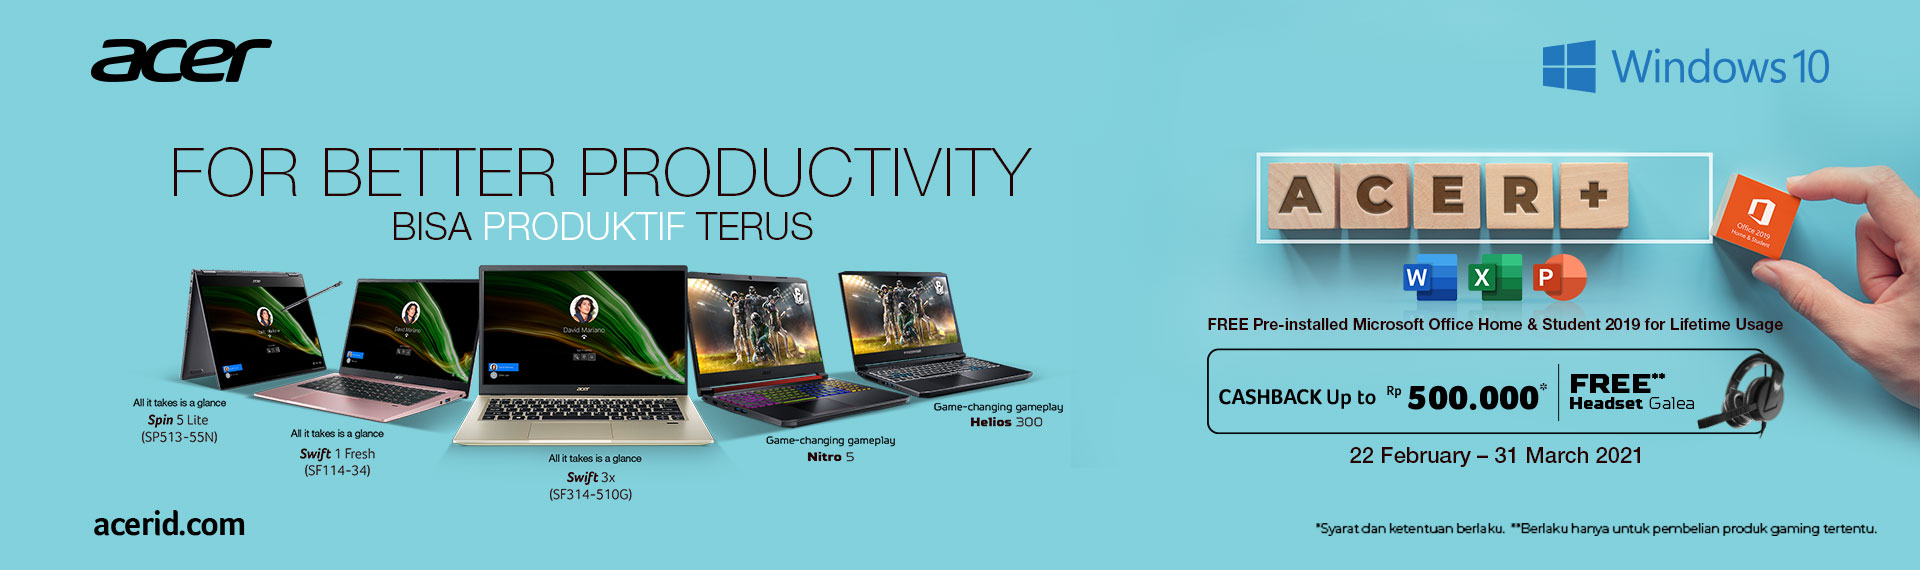 Promo Laptop Acer Dapat Cashback Hingga Rp500.000 dan Office Home & Student Seumur Hidup!